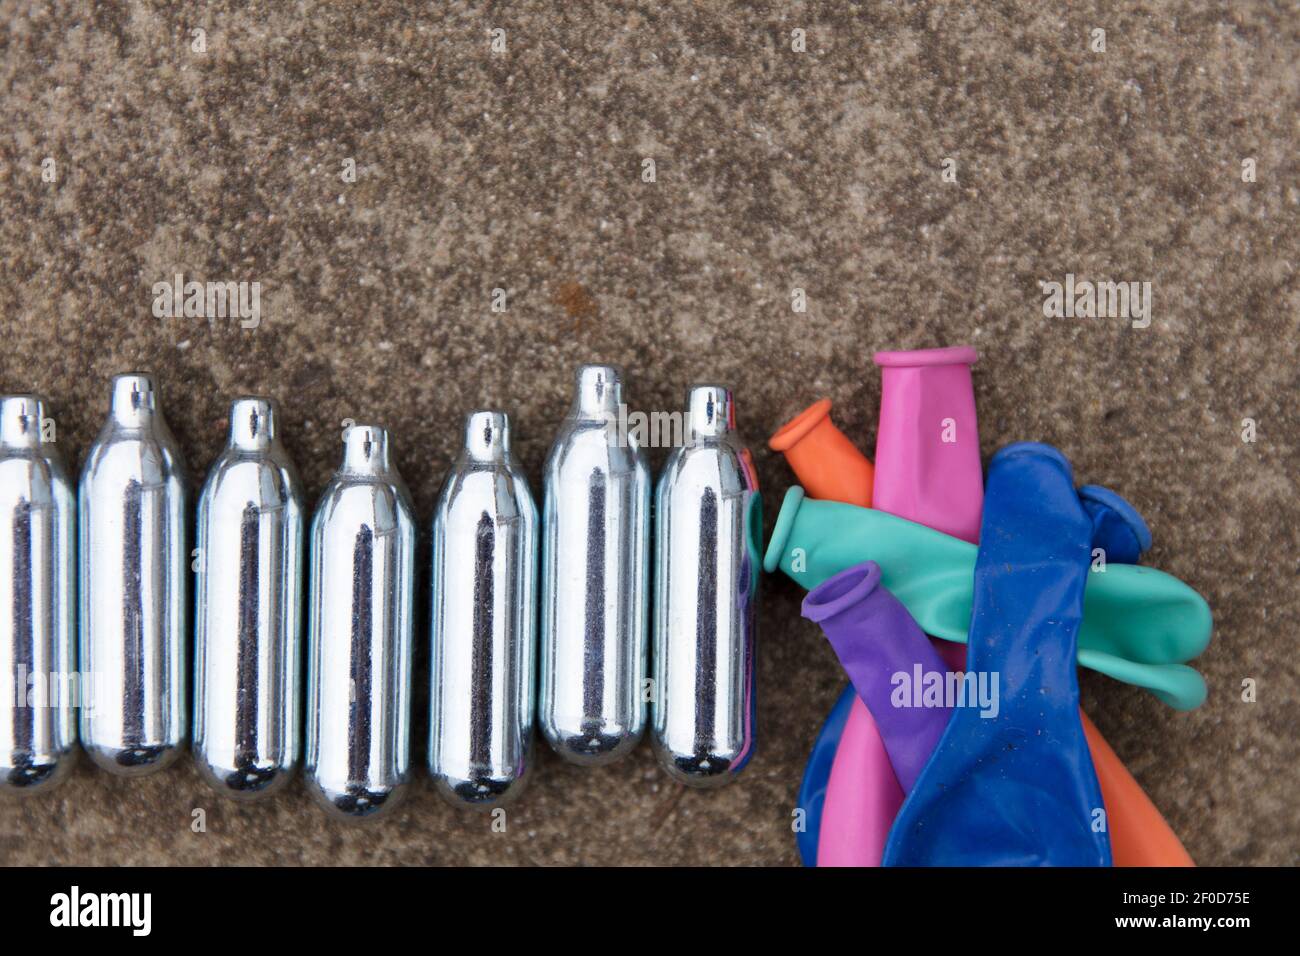 Ampoules métalliques d'oxyde nitreux ou gaz riant usage récréatif de drogues Banque D'Images